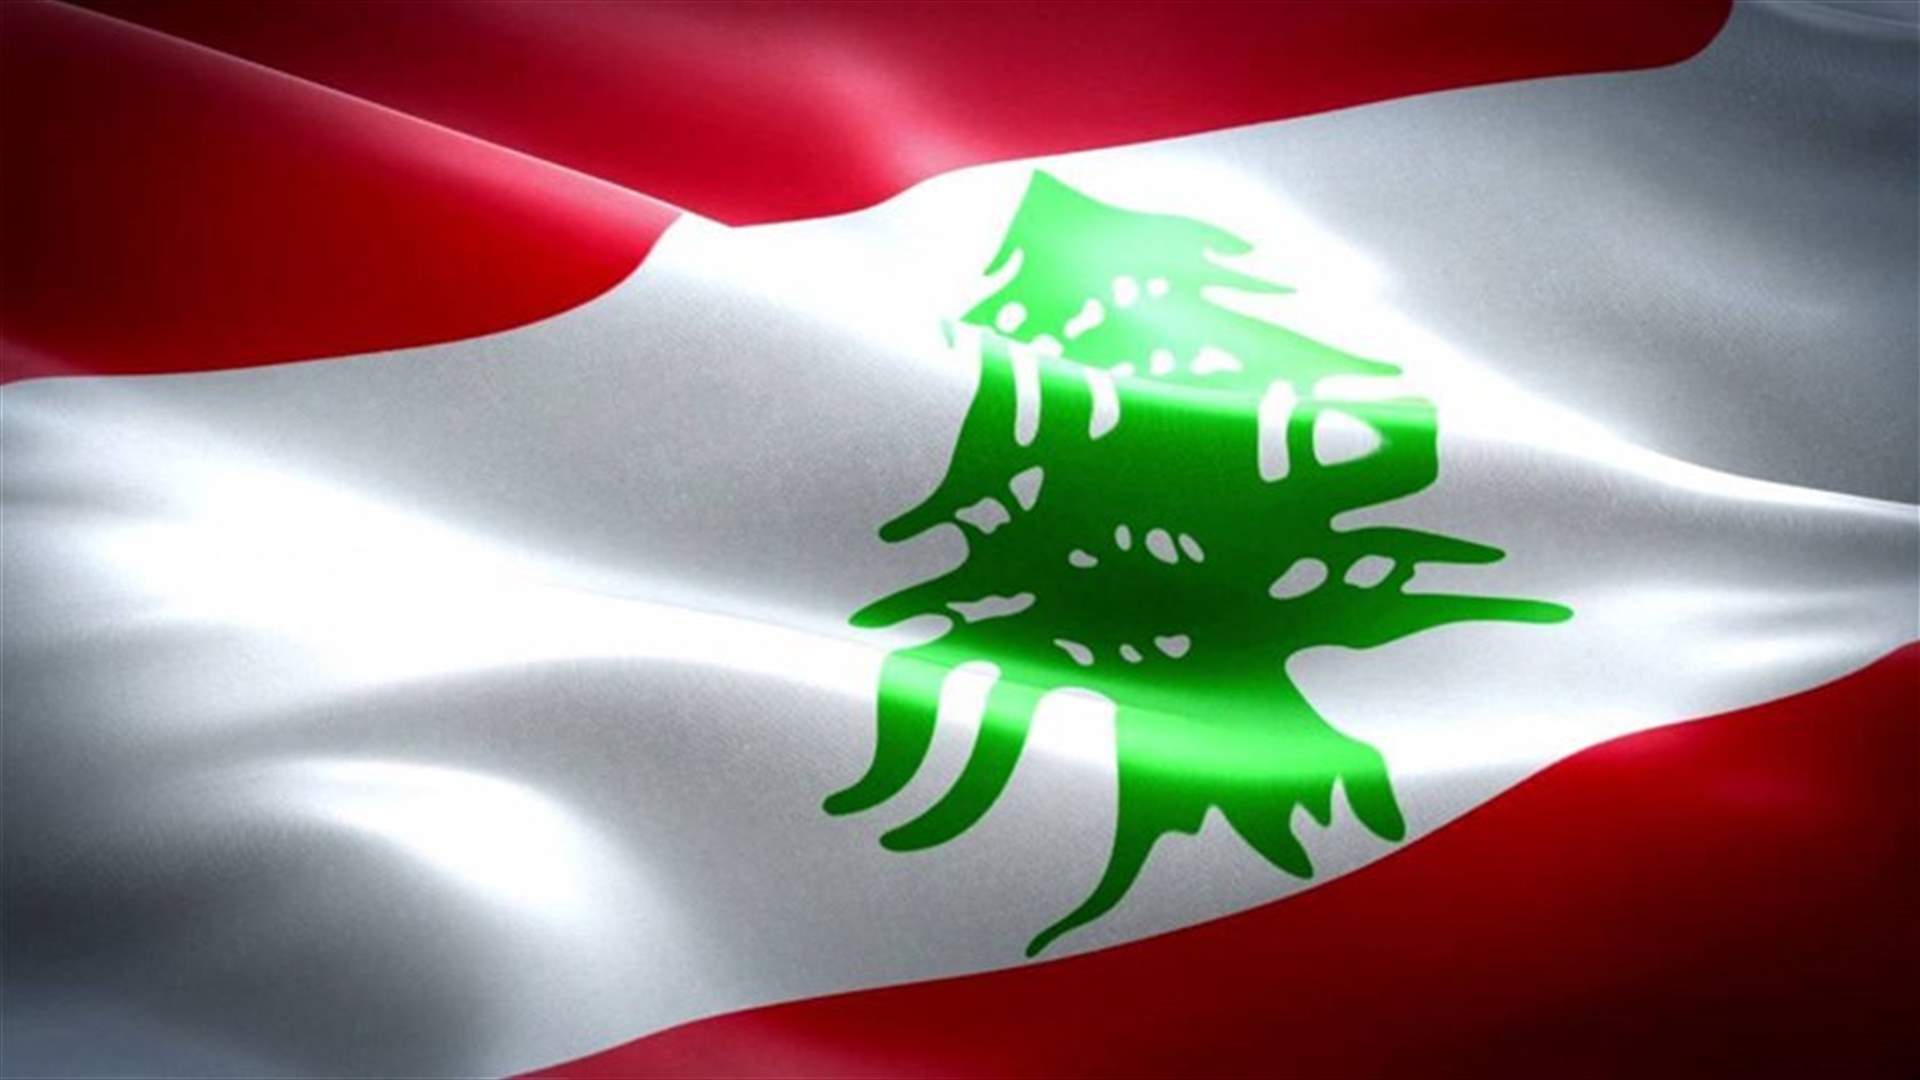 تقييم رسمي لبناني للحضور الفرنسي في لبنان.. خيبة وتحفظ واستياء (الجمهورية)